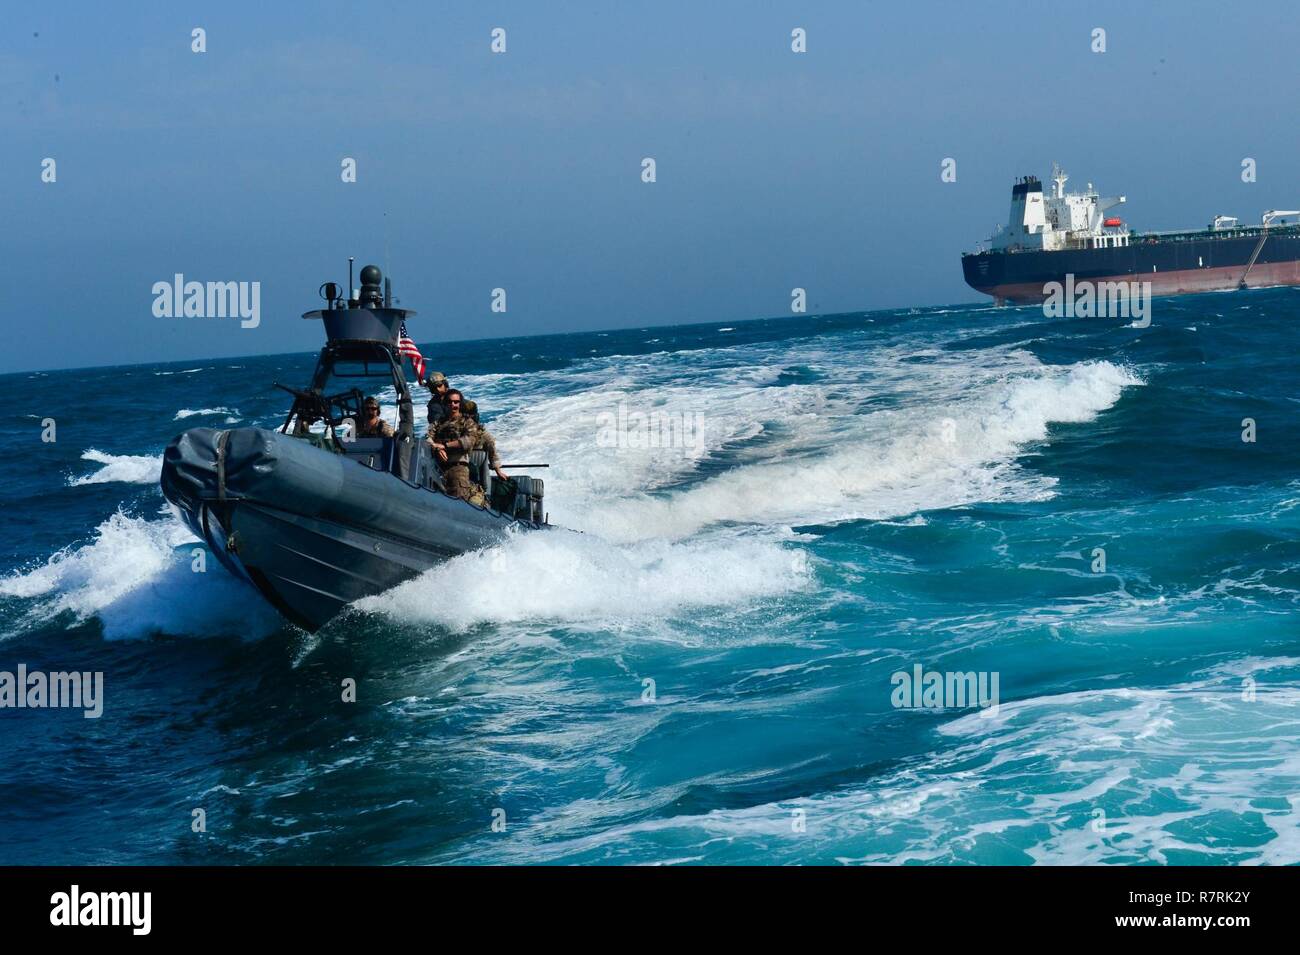 Kuwaitischen TERRITORIALGEWÄSSERN, Kuwait - Elite militärische Spezialeinsatzkräfte aus dem Golf-kooperationsrat, und in den USA führte eine simulierte schnelle Reaktion auf die Entführung des Motors tanker oder Öltanker, die hadiyah, 3. April, in Kuwait Hoheitsgewässer. Special forces Teams aus den GCC und U.S. Naval Special Warfare und Starre - Rumpf Schlauchboot Teams simuliert eine Luft- und Seeverkehrs schnell einfügen, Durchsuchung und Beschlagnahme der besetzten Tanker und seine Entführer und die sichere Freilassung der Tanker Besatzungsmitglieder. Die raid wurde eine kumulative gemeinsame Übung, dass die Teilnehmer 'Ta getestet Stockfoto